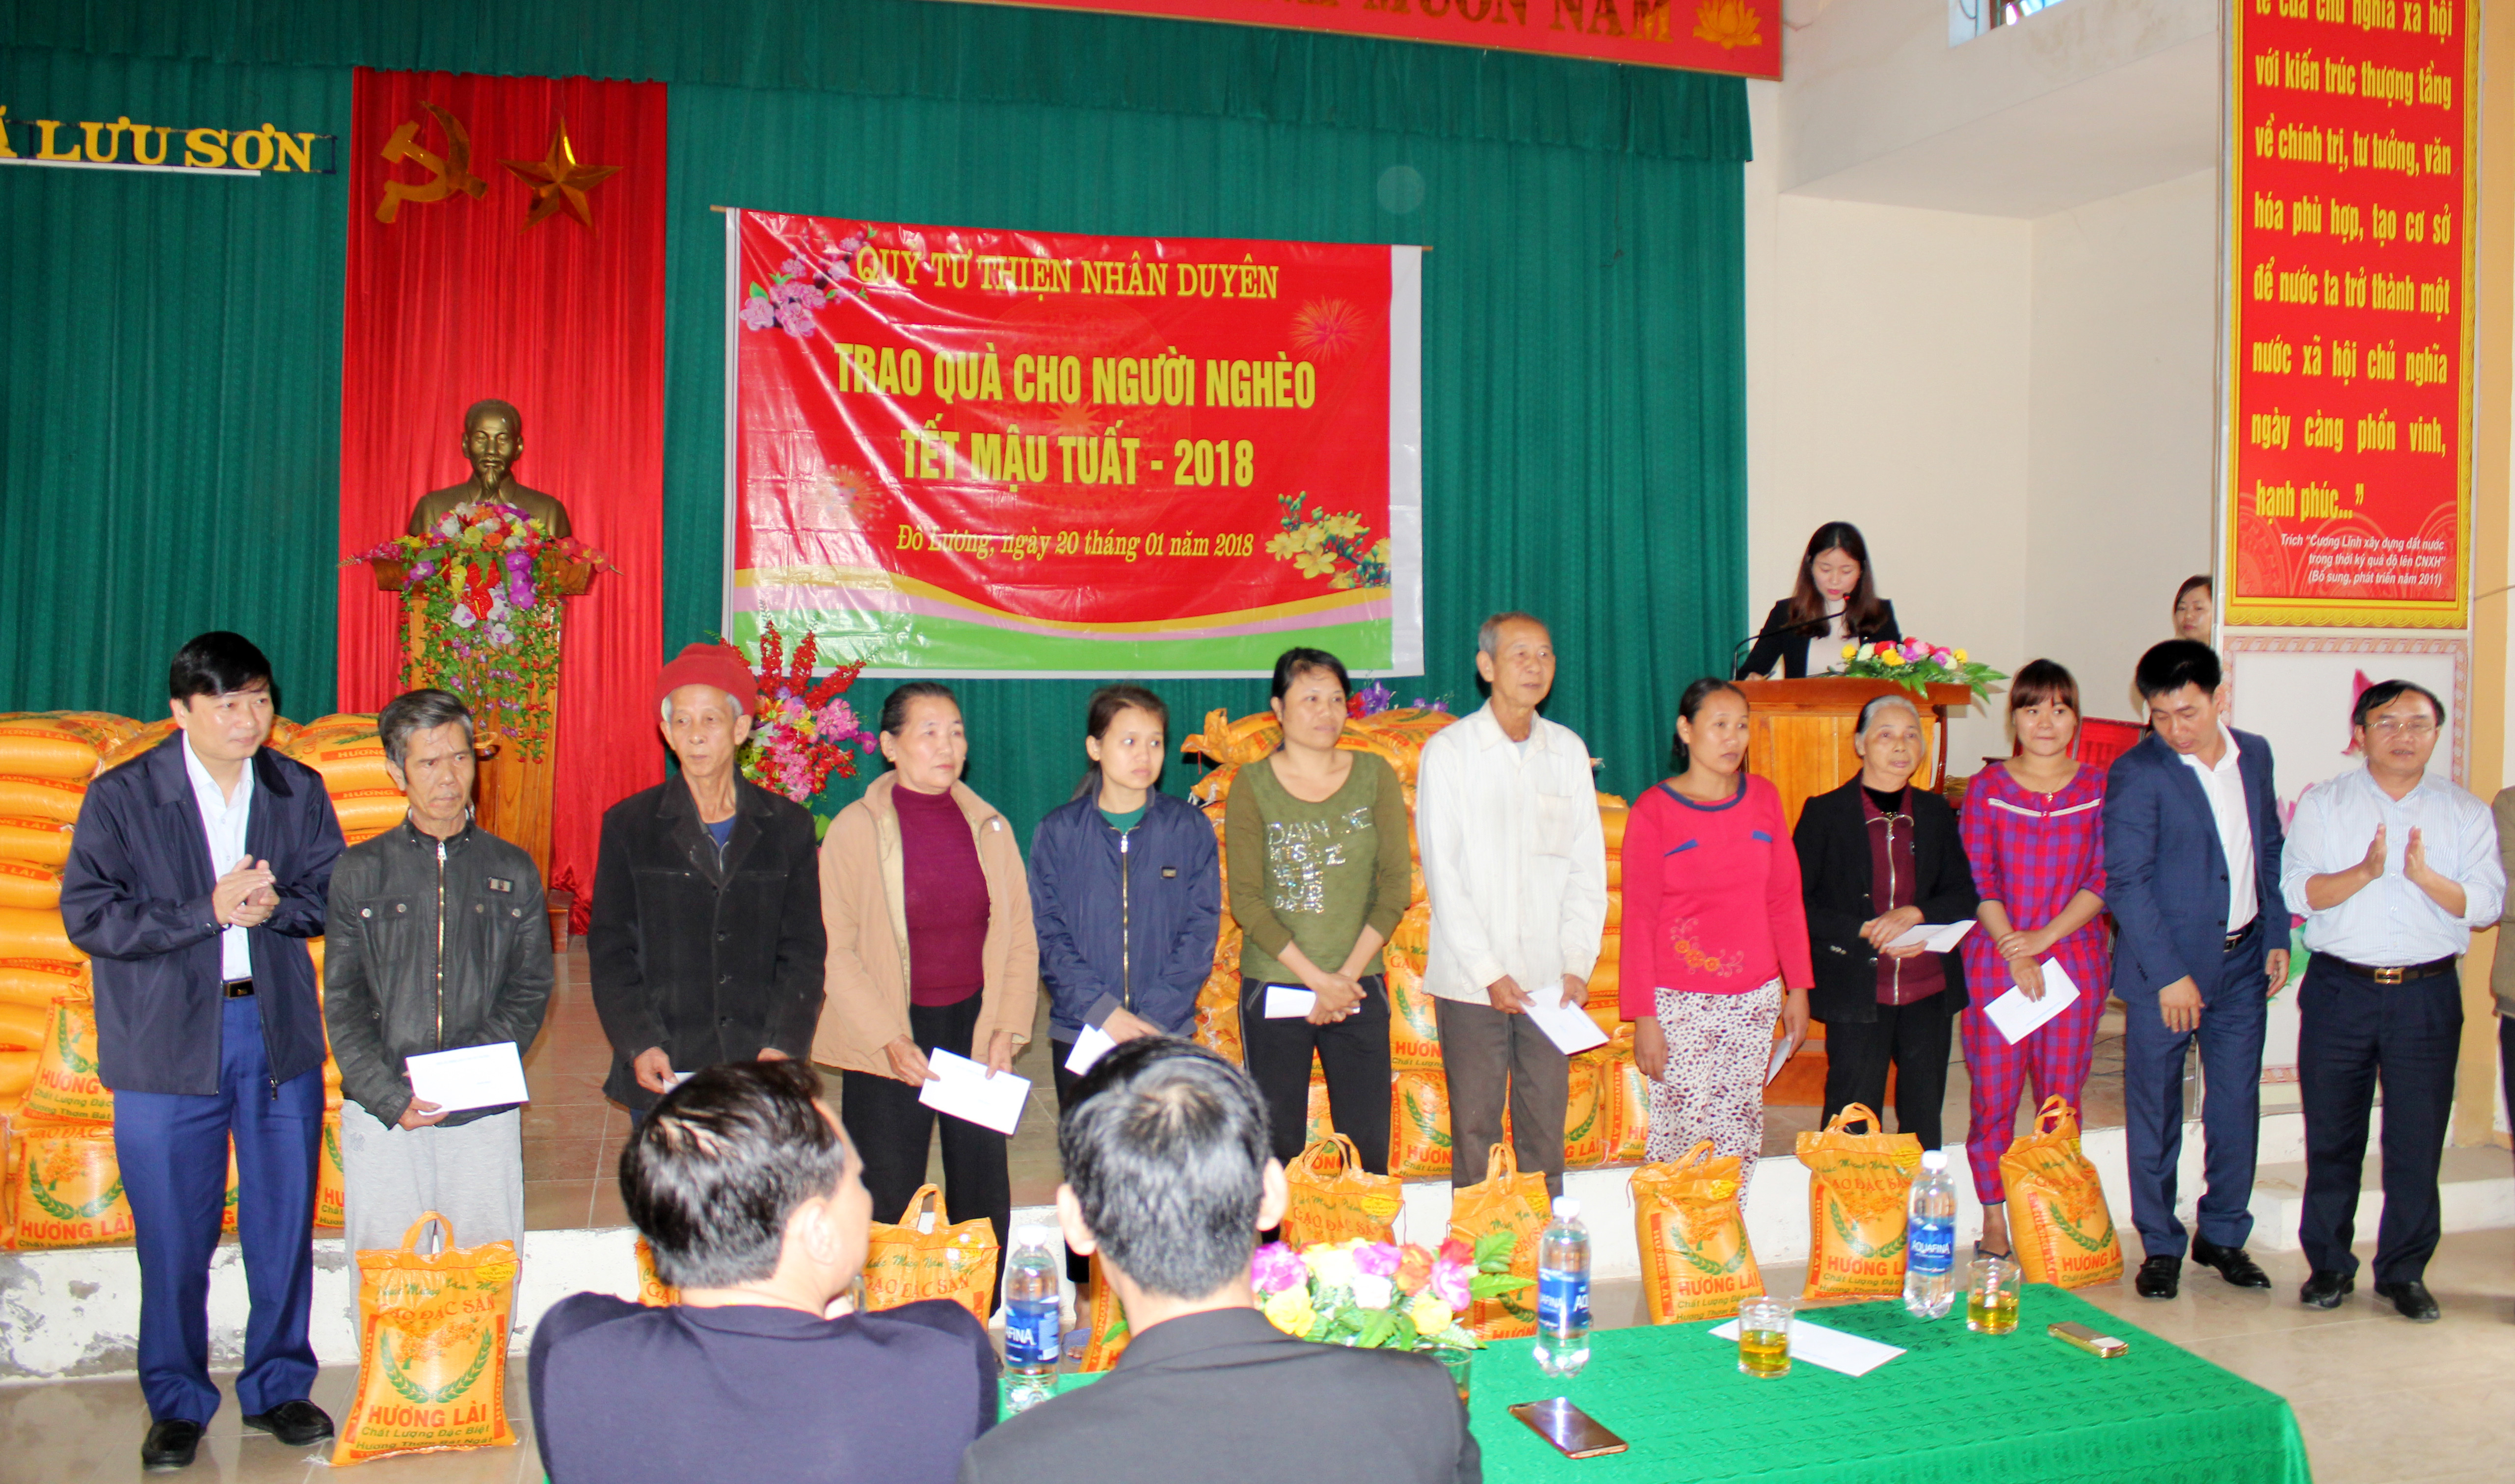 Quỹ Nhân duyên trao tặng quà cho các hộ nghèo xã Lưu Sơn, Đô Lương. Ảnh: Hoàng Phi